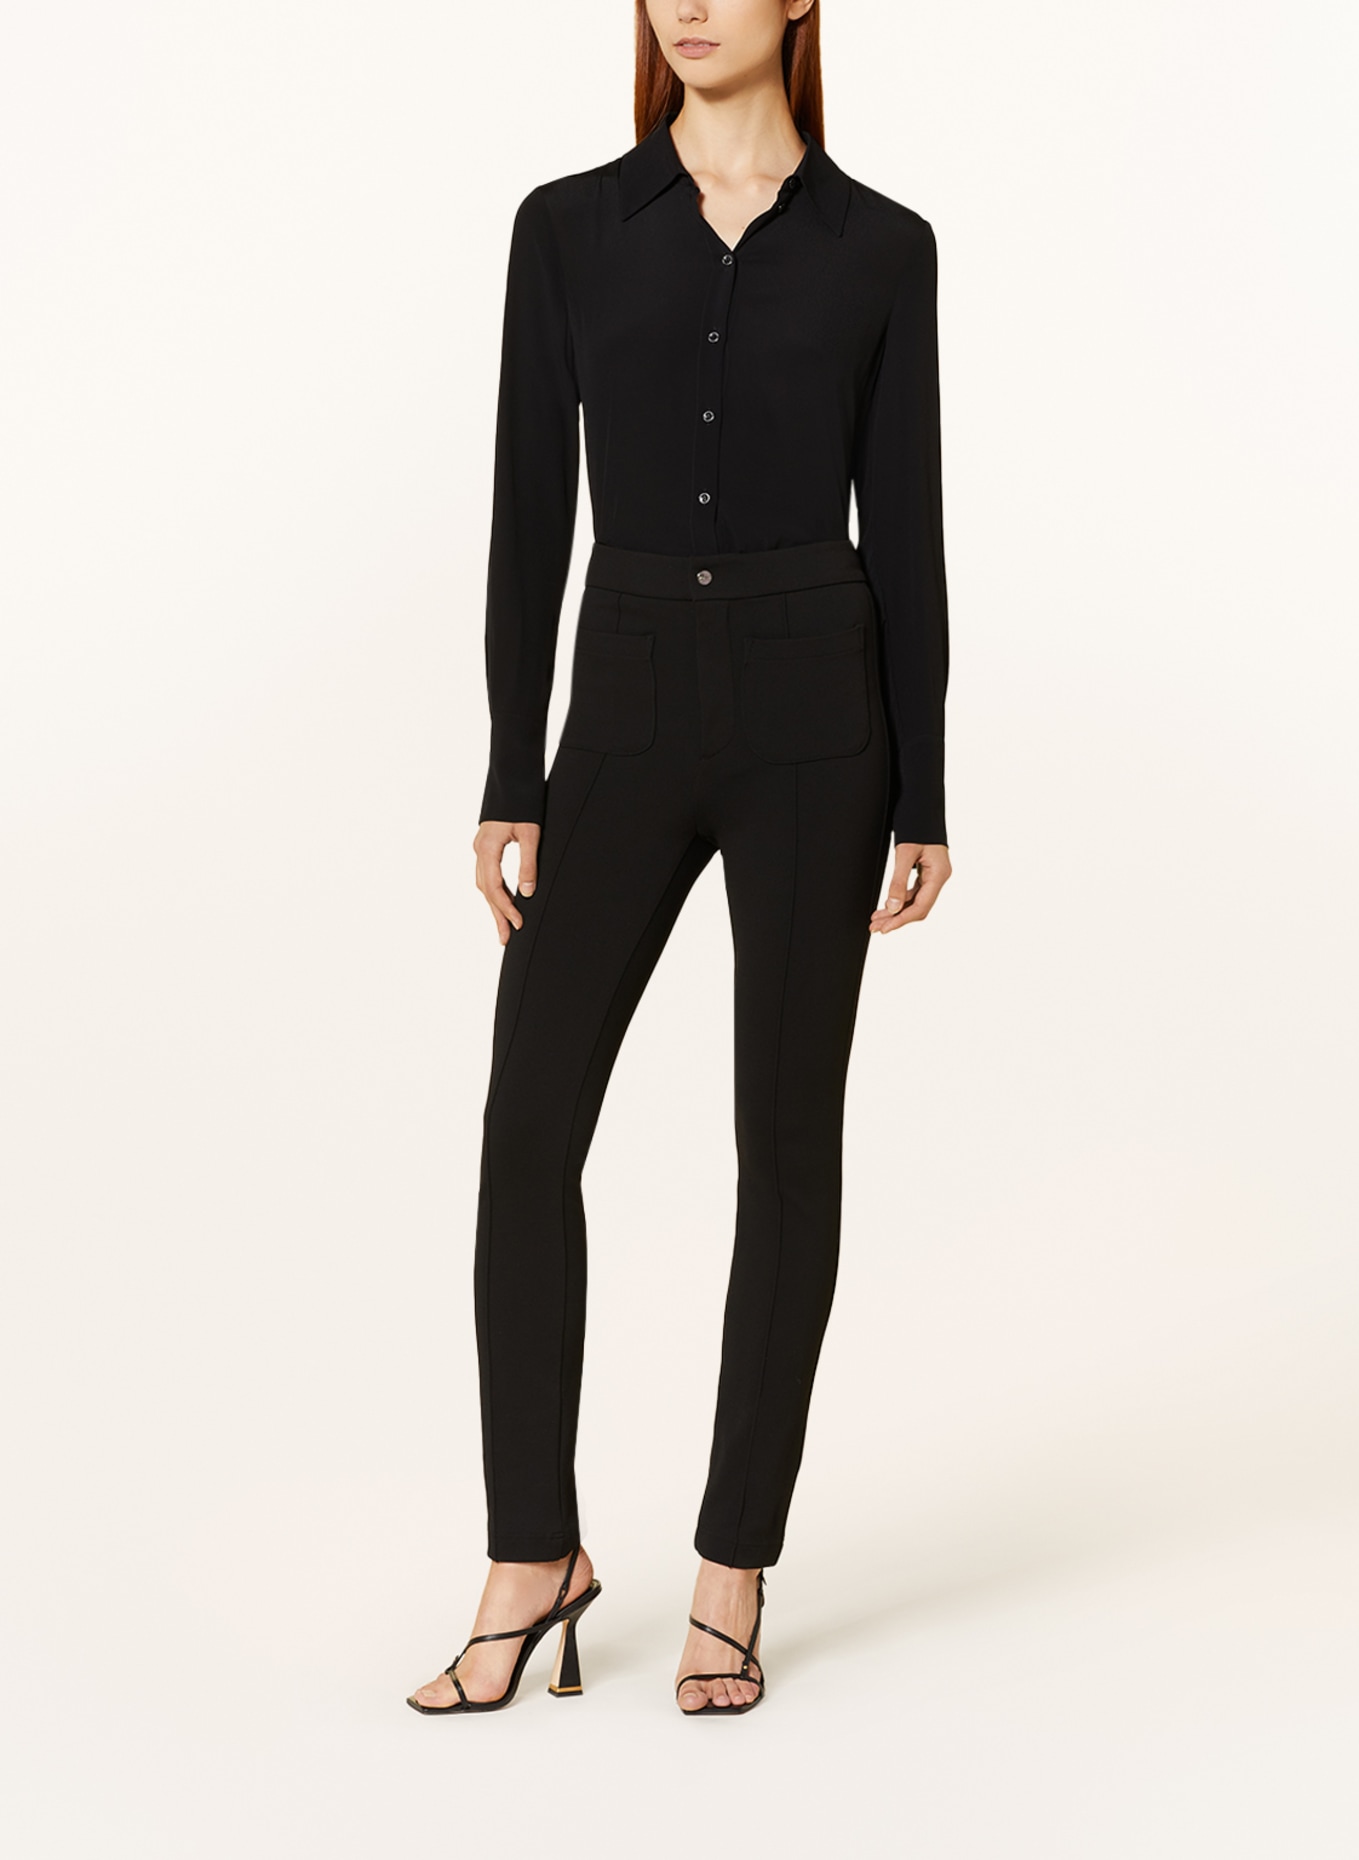 VANILIA Jersey pants, Color: BLACK (Image 2)